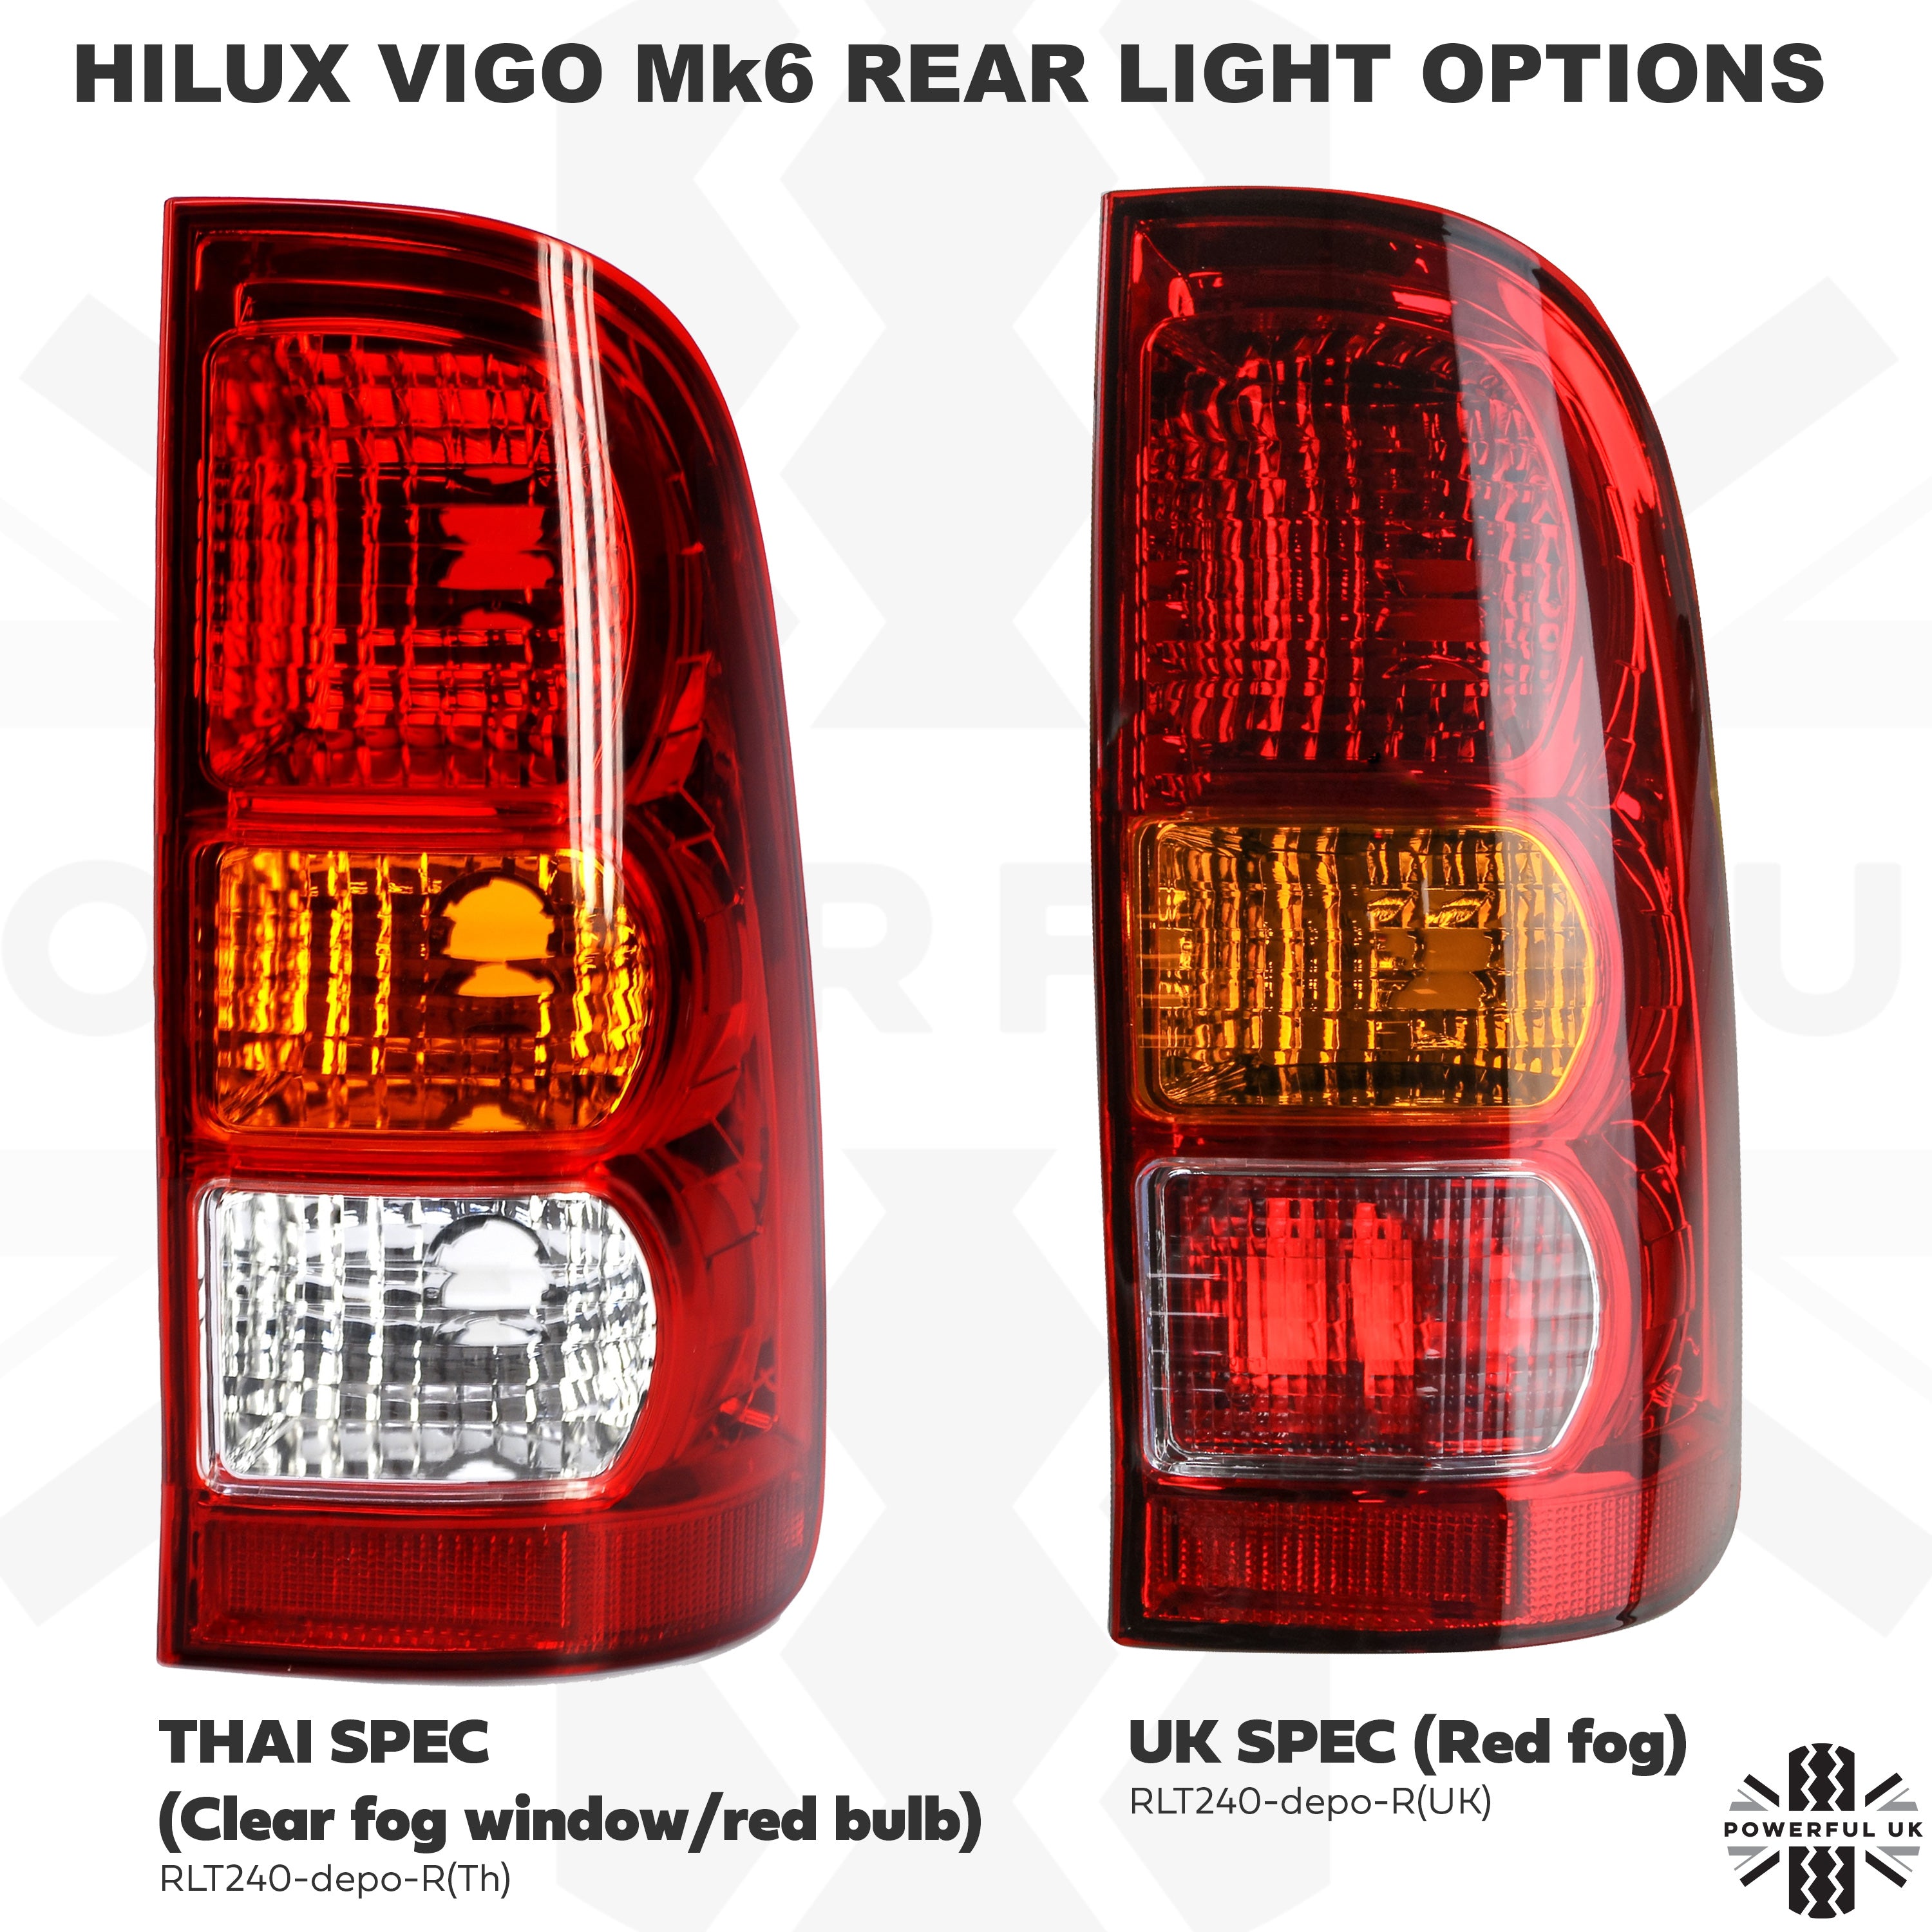 Toyota Hilux Mk6 / Vigo Rear Light - with E Mark - RH